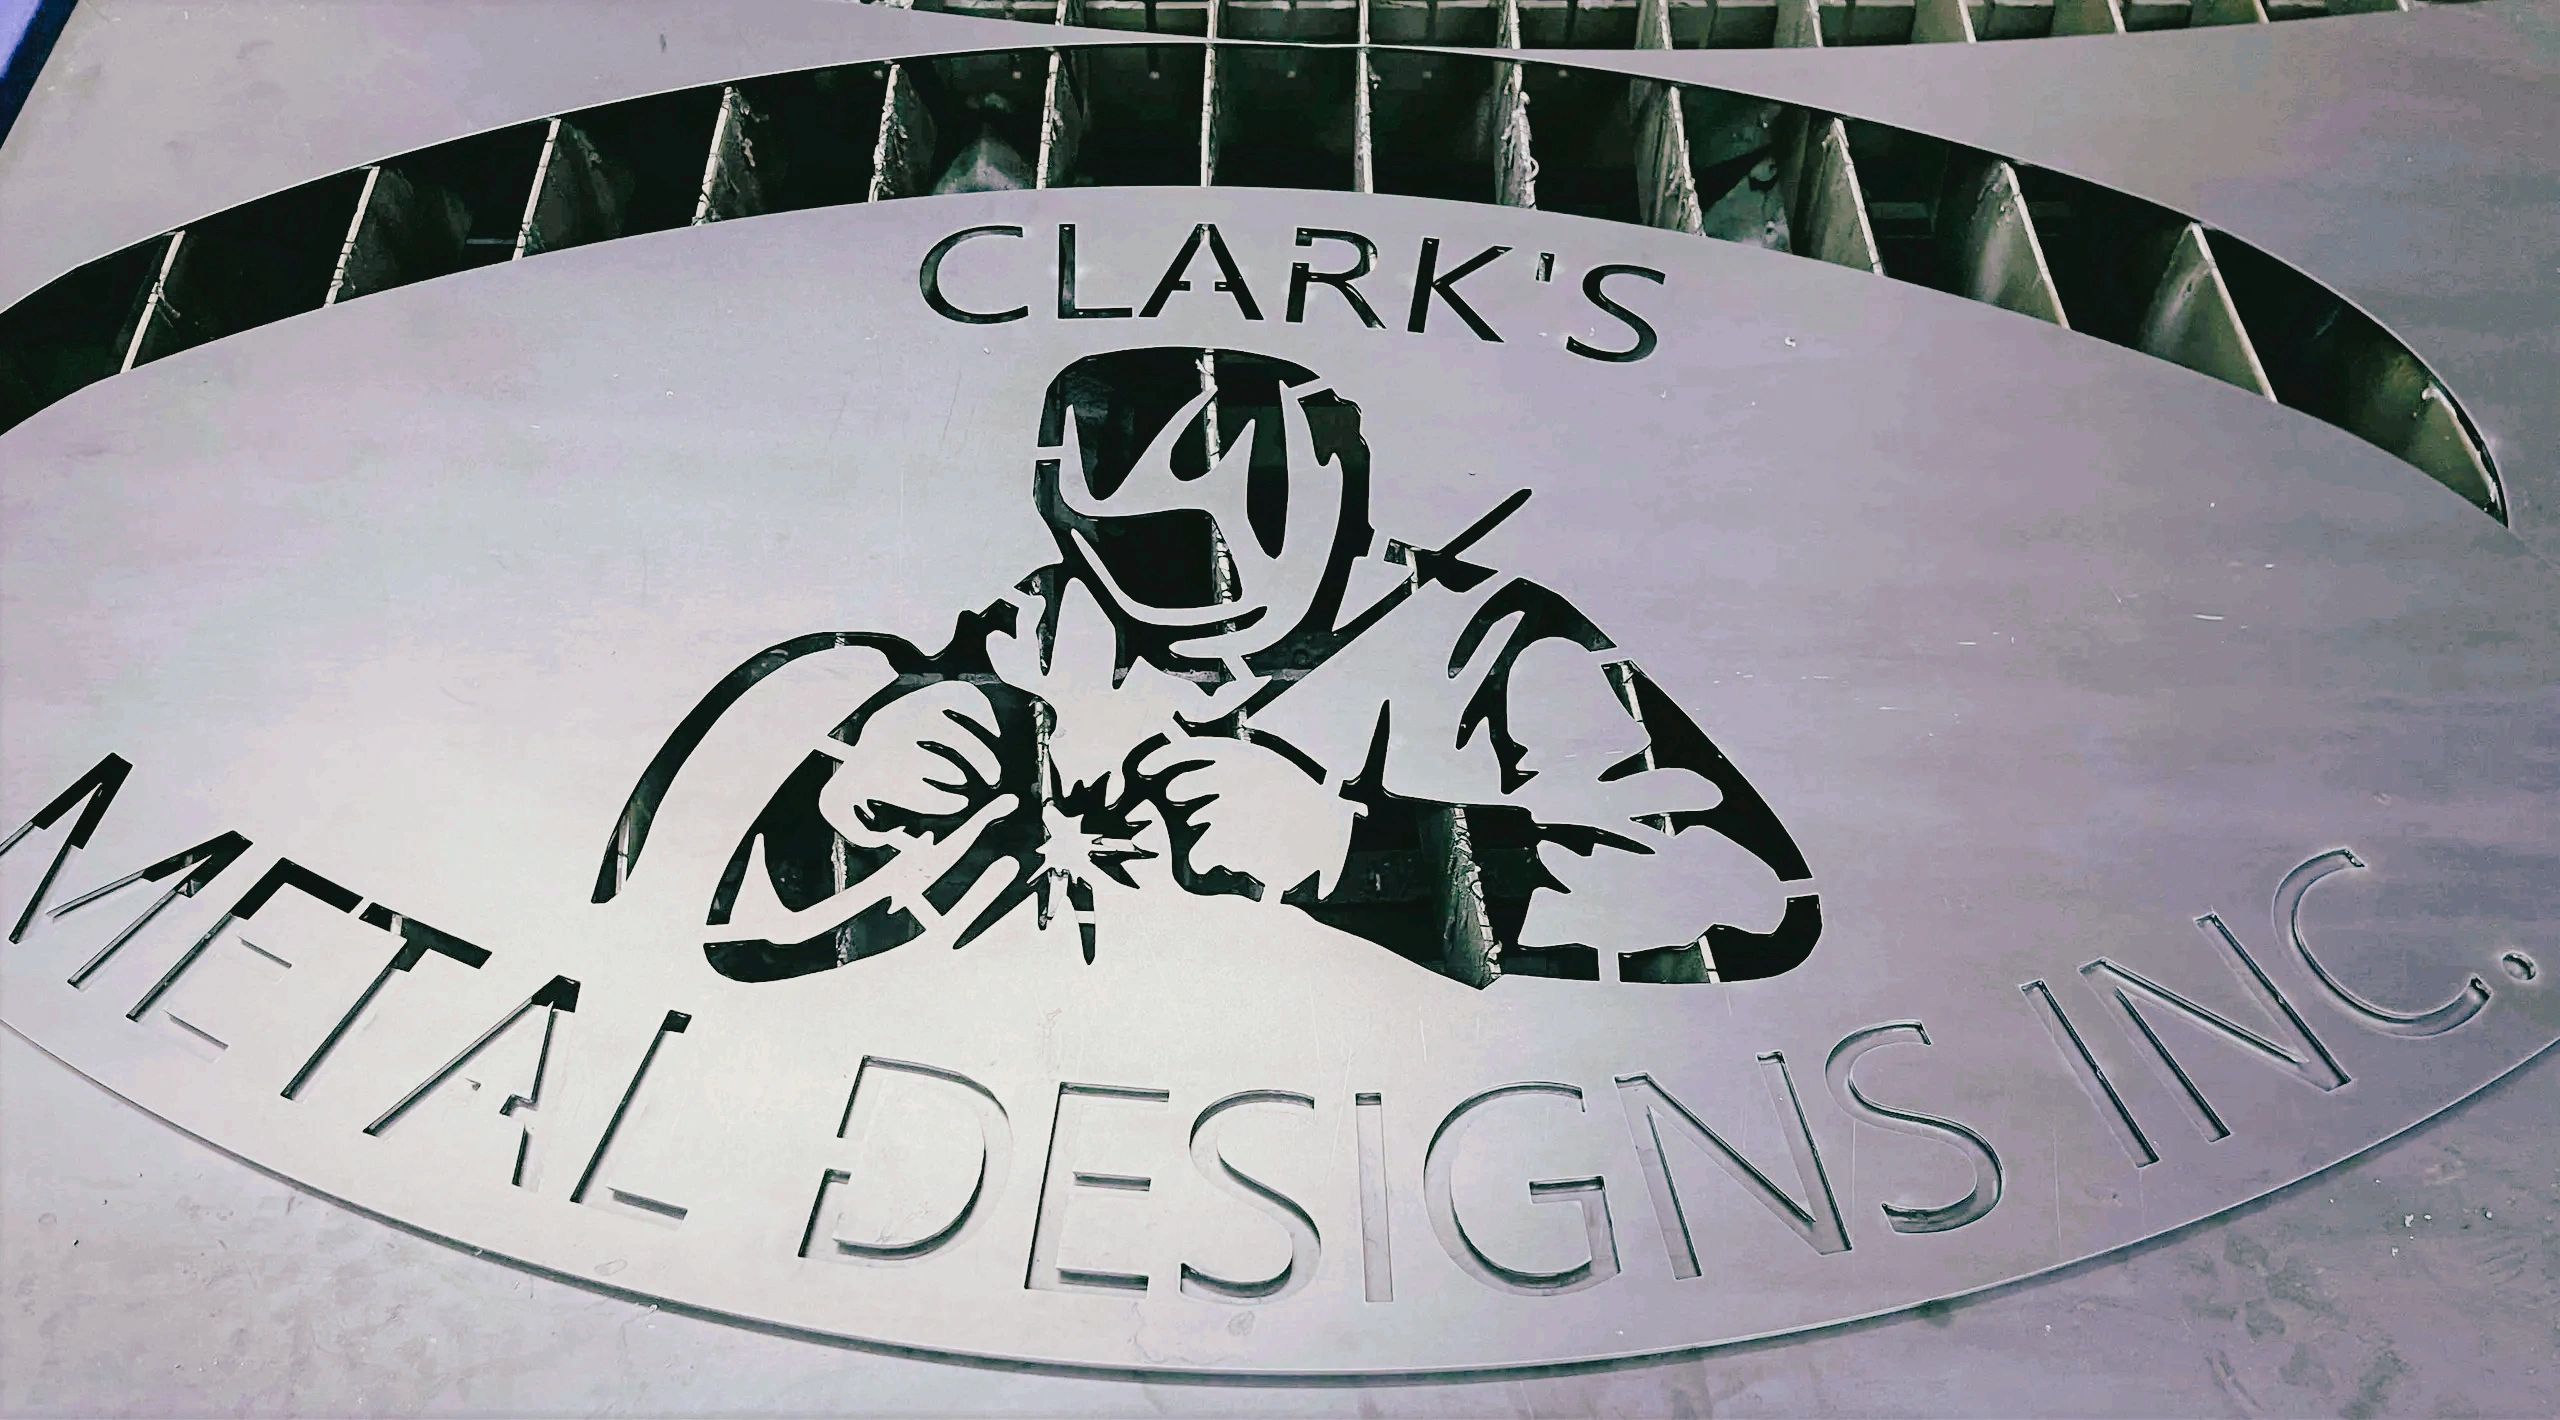 Clark's Metal Designs, Inc. - Sheet Metal Fabrication, Welding